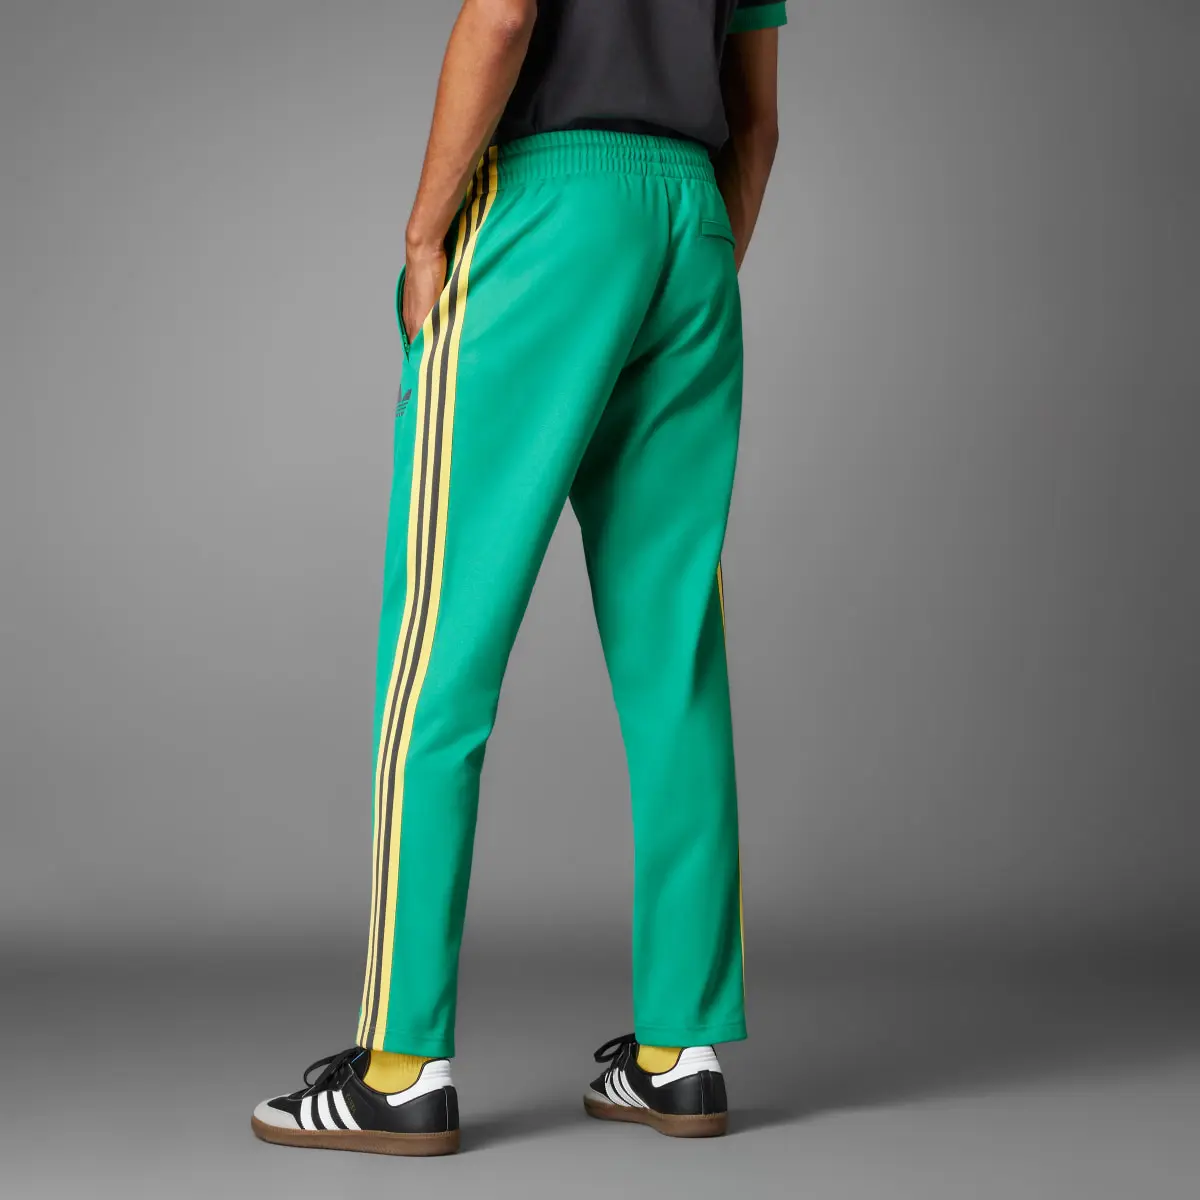 Adidas Pants Beckenbauer Jamaica. 2